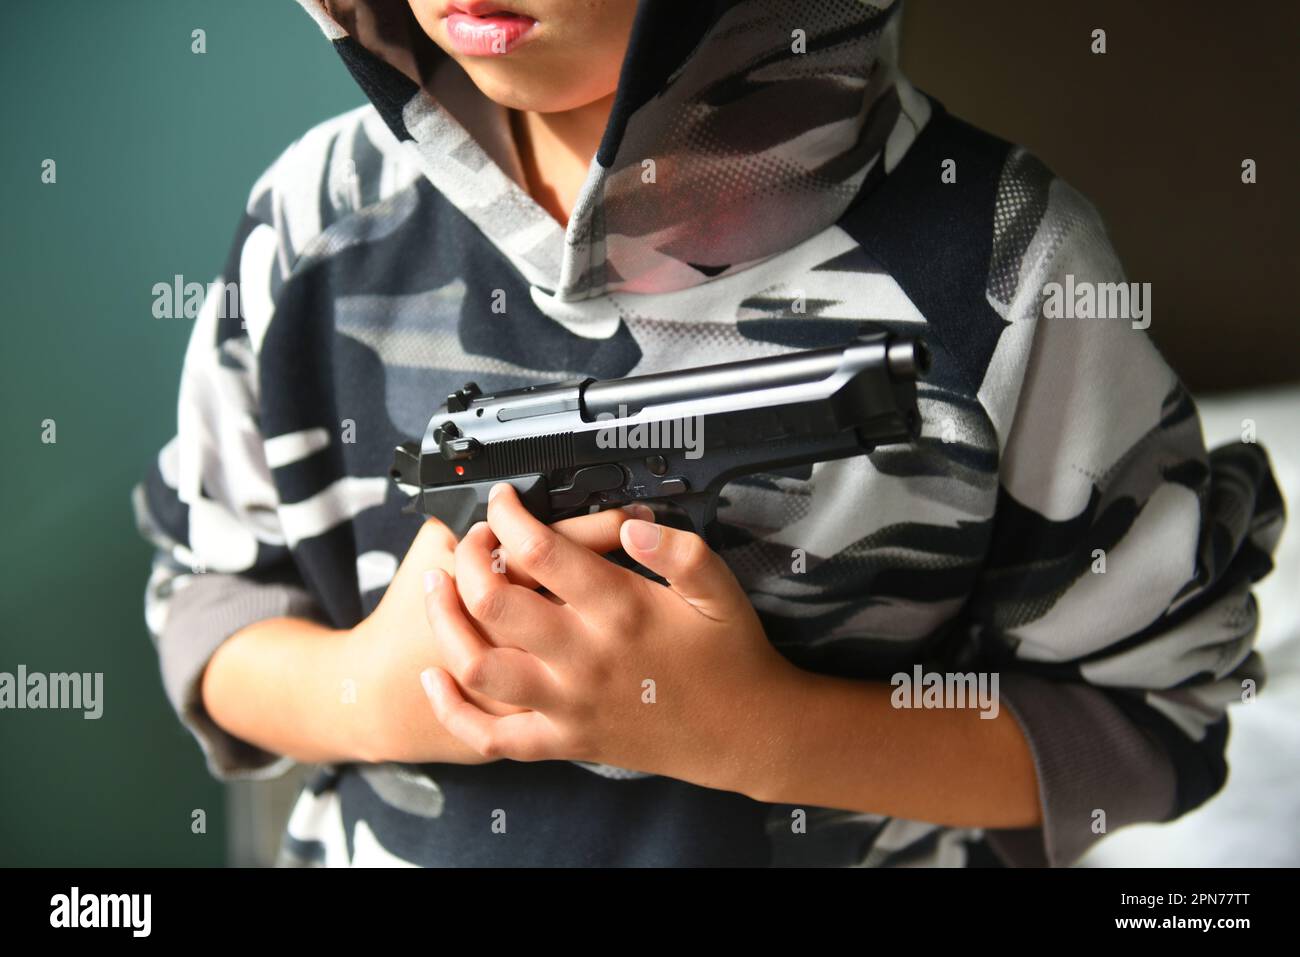 Child gun crime Stock Photo